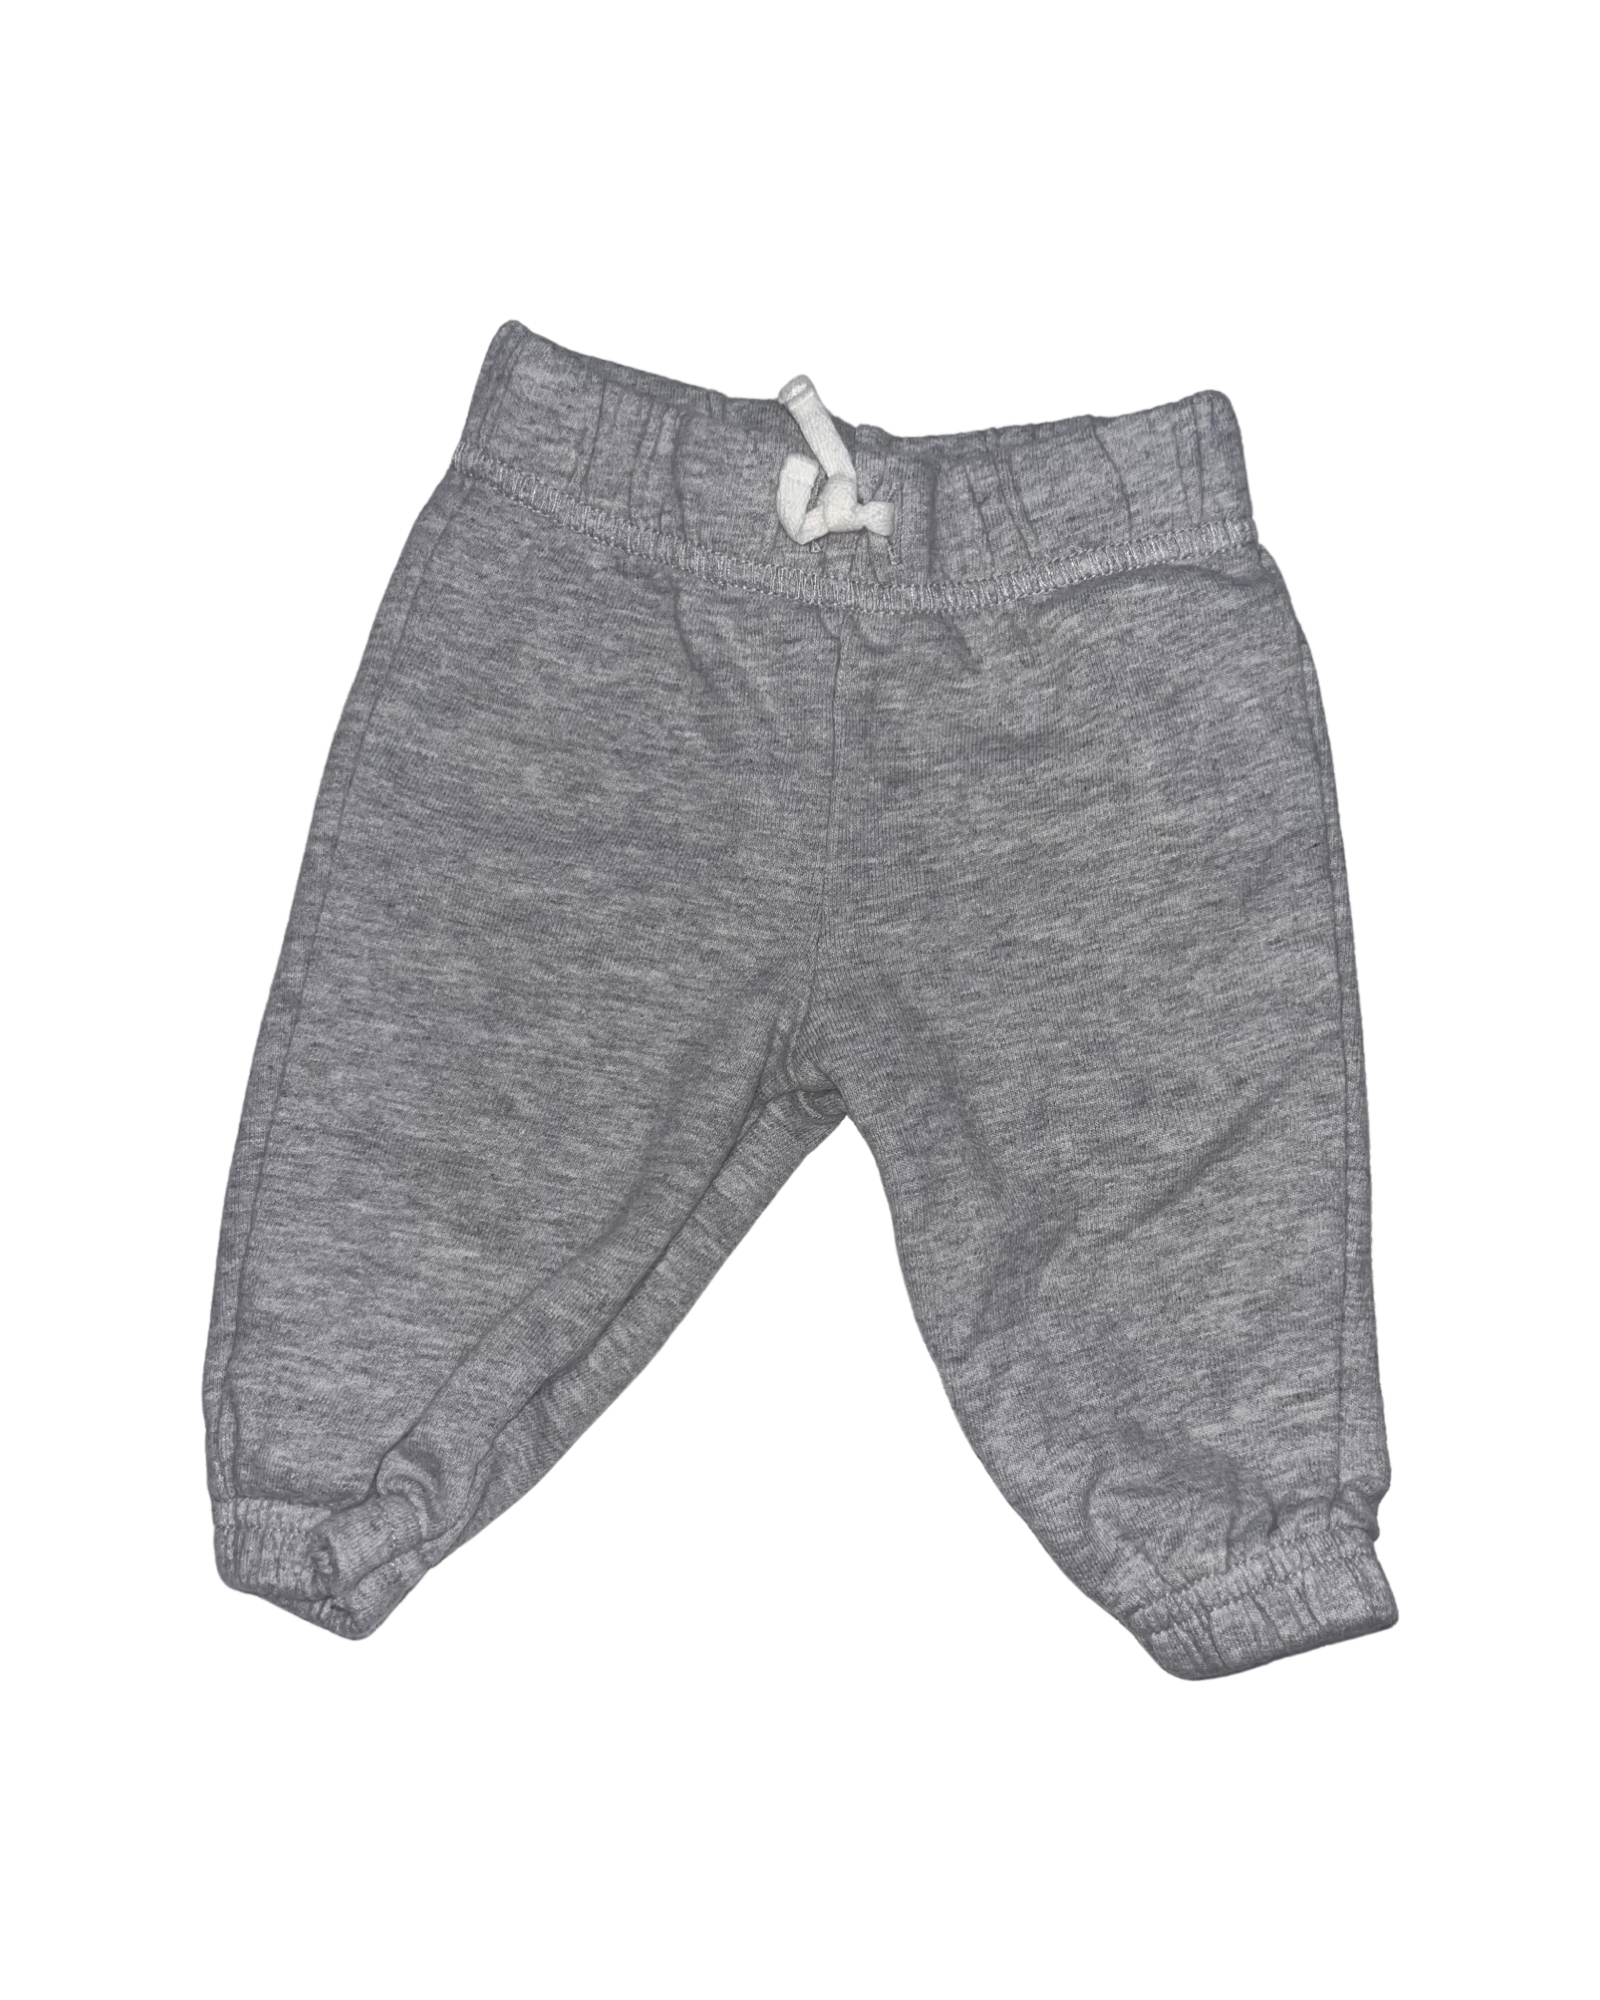 Carter's Grey Pants (0-3M)